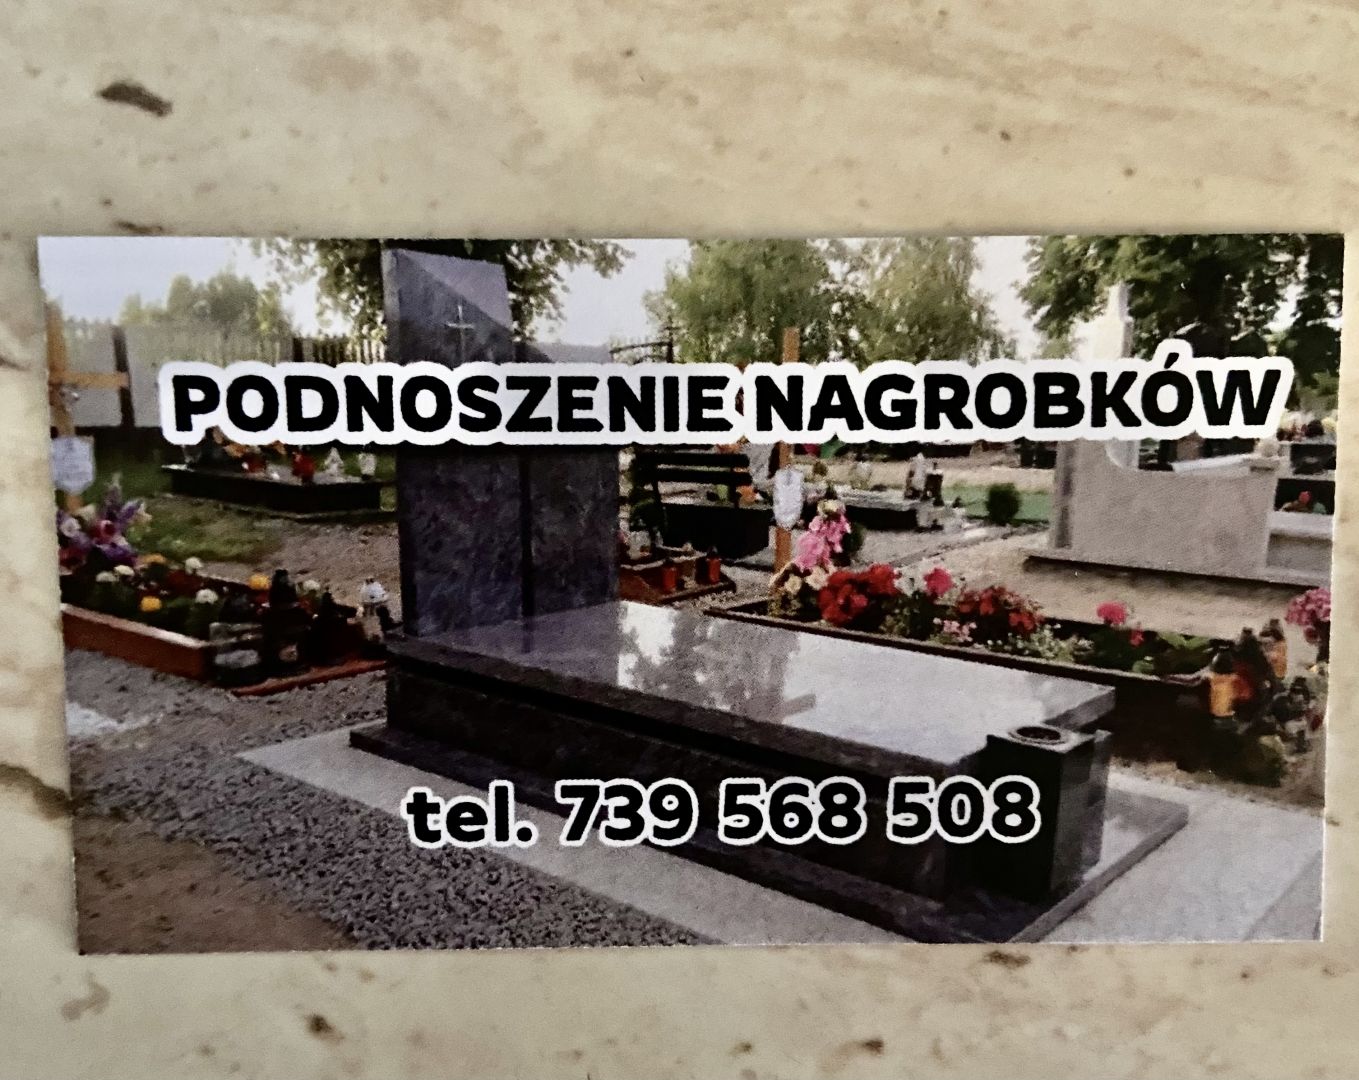 Podnoszenie Nagrobków Wrocław - Zdjęcie 1